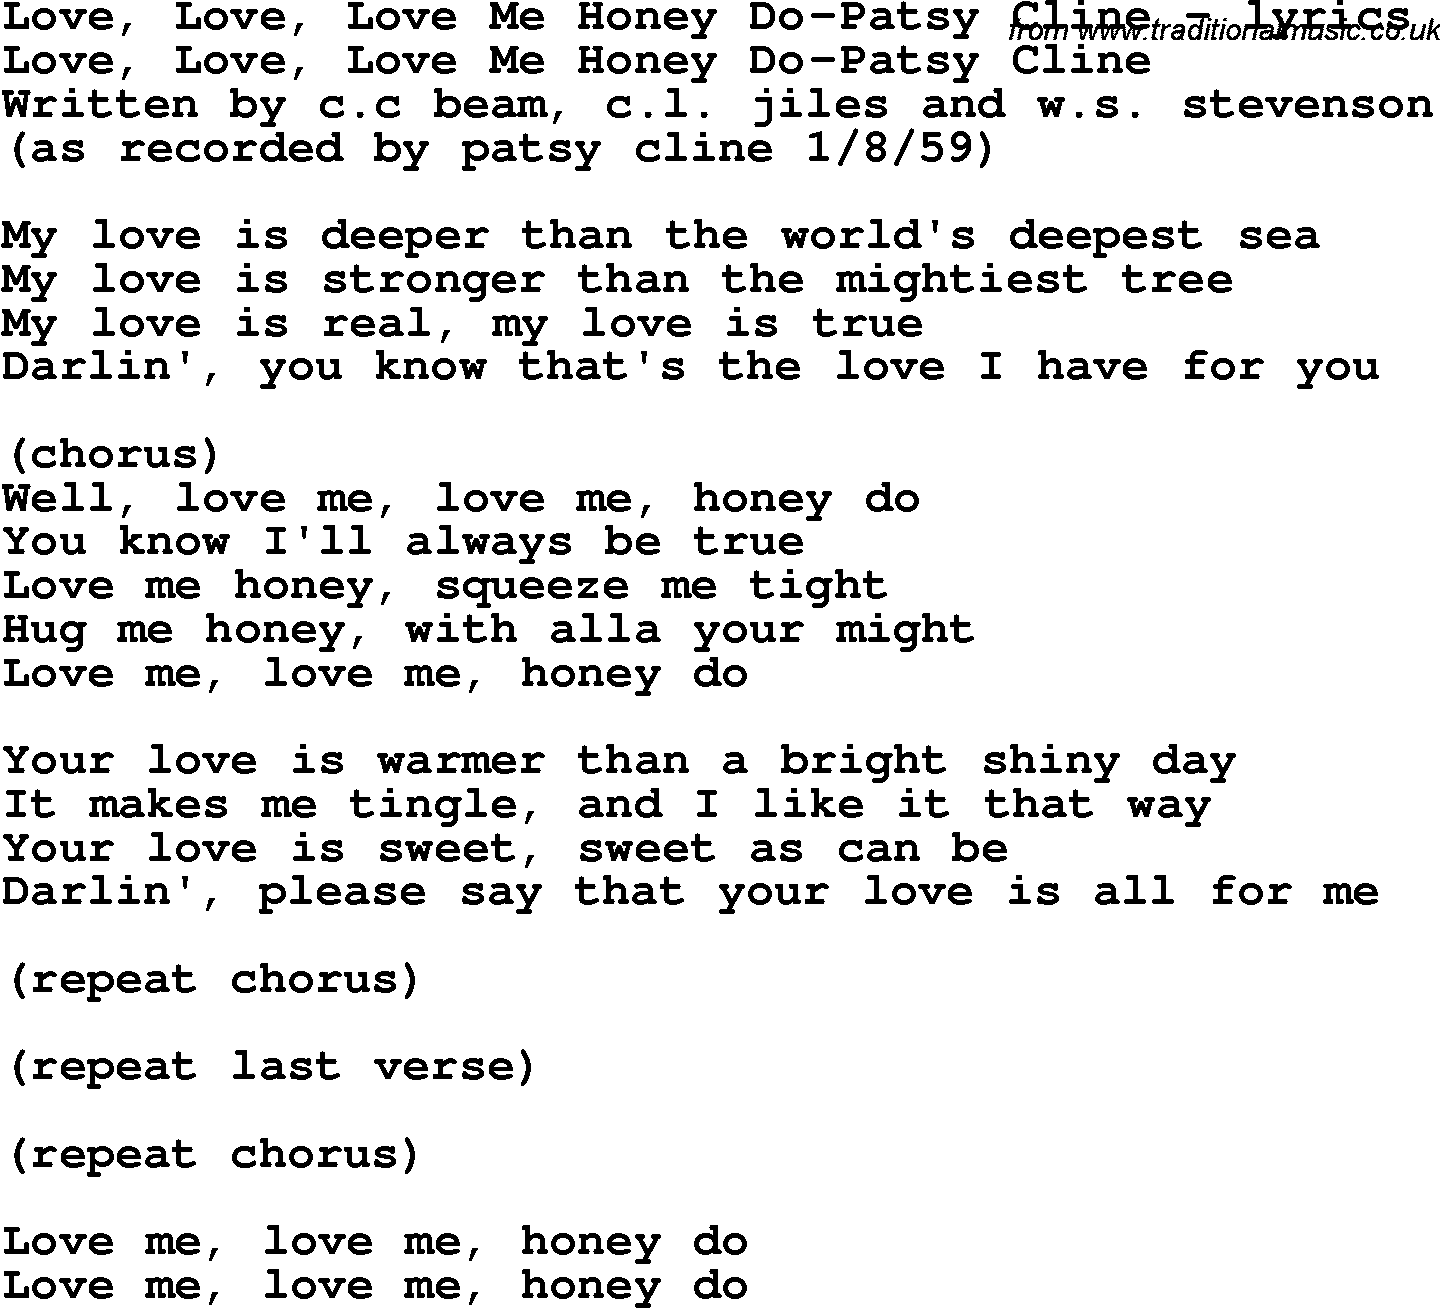 Love Song Lyrics for: Love, Love, Love Me Honey Do-Patsy Cline